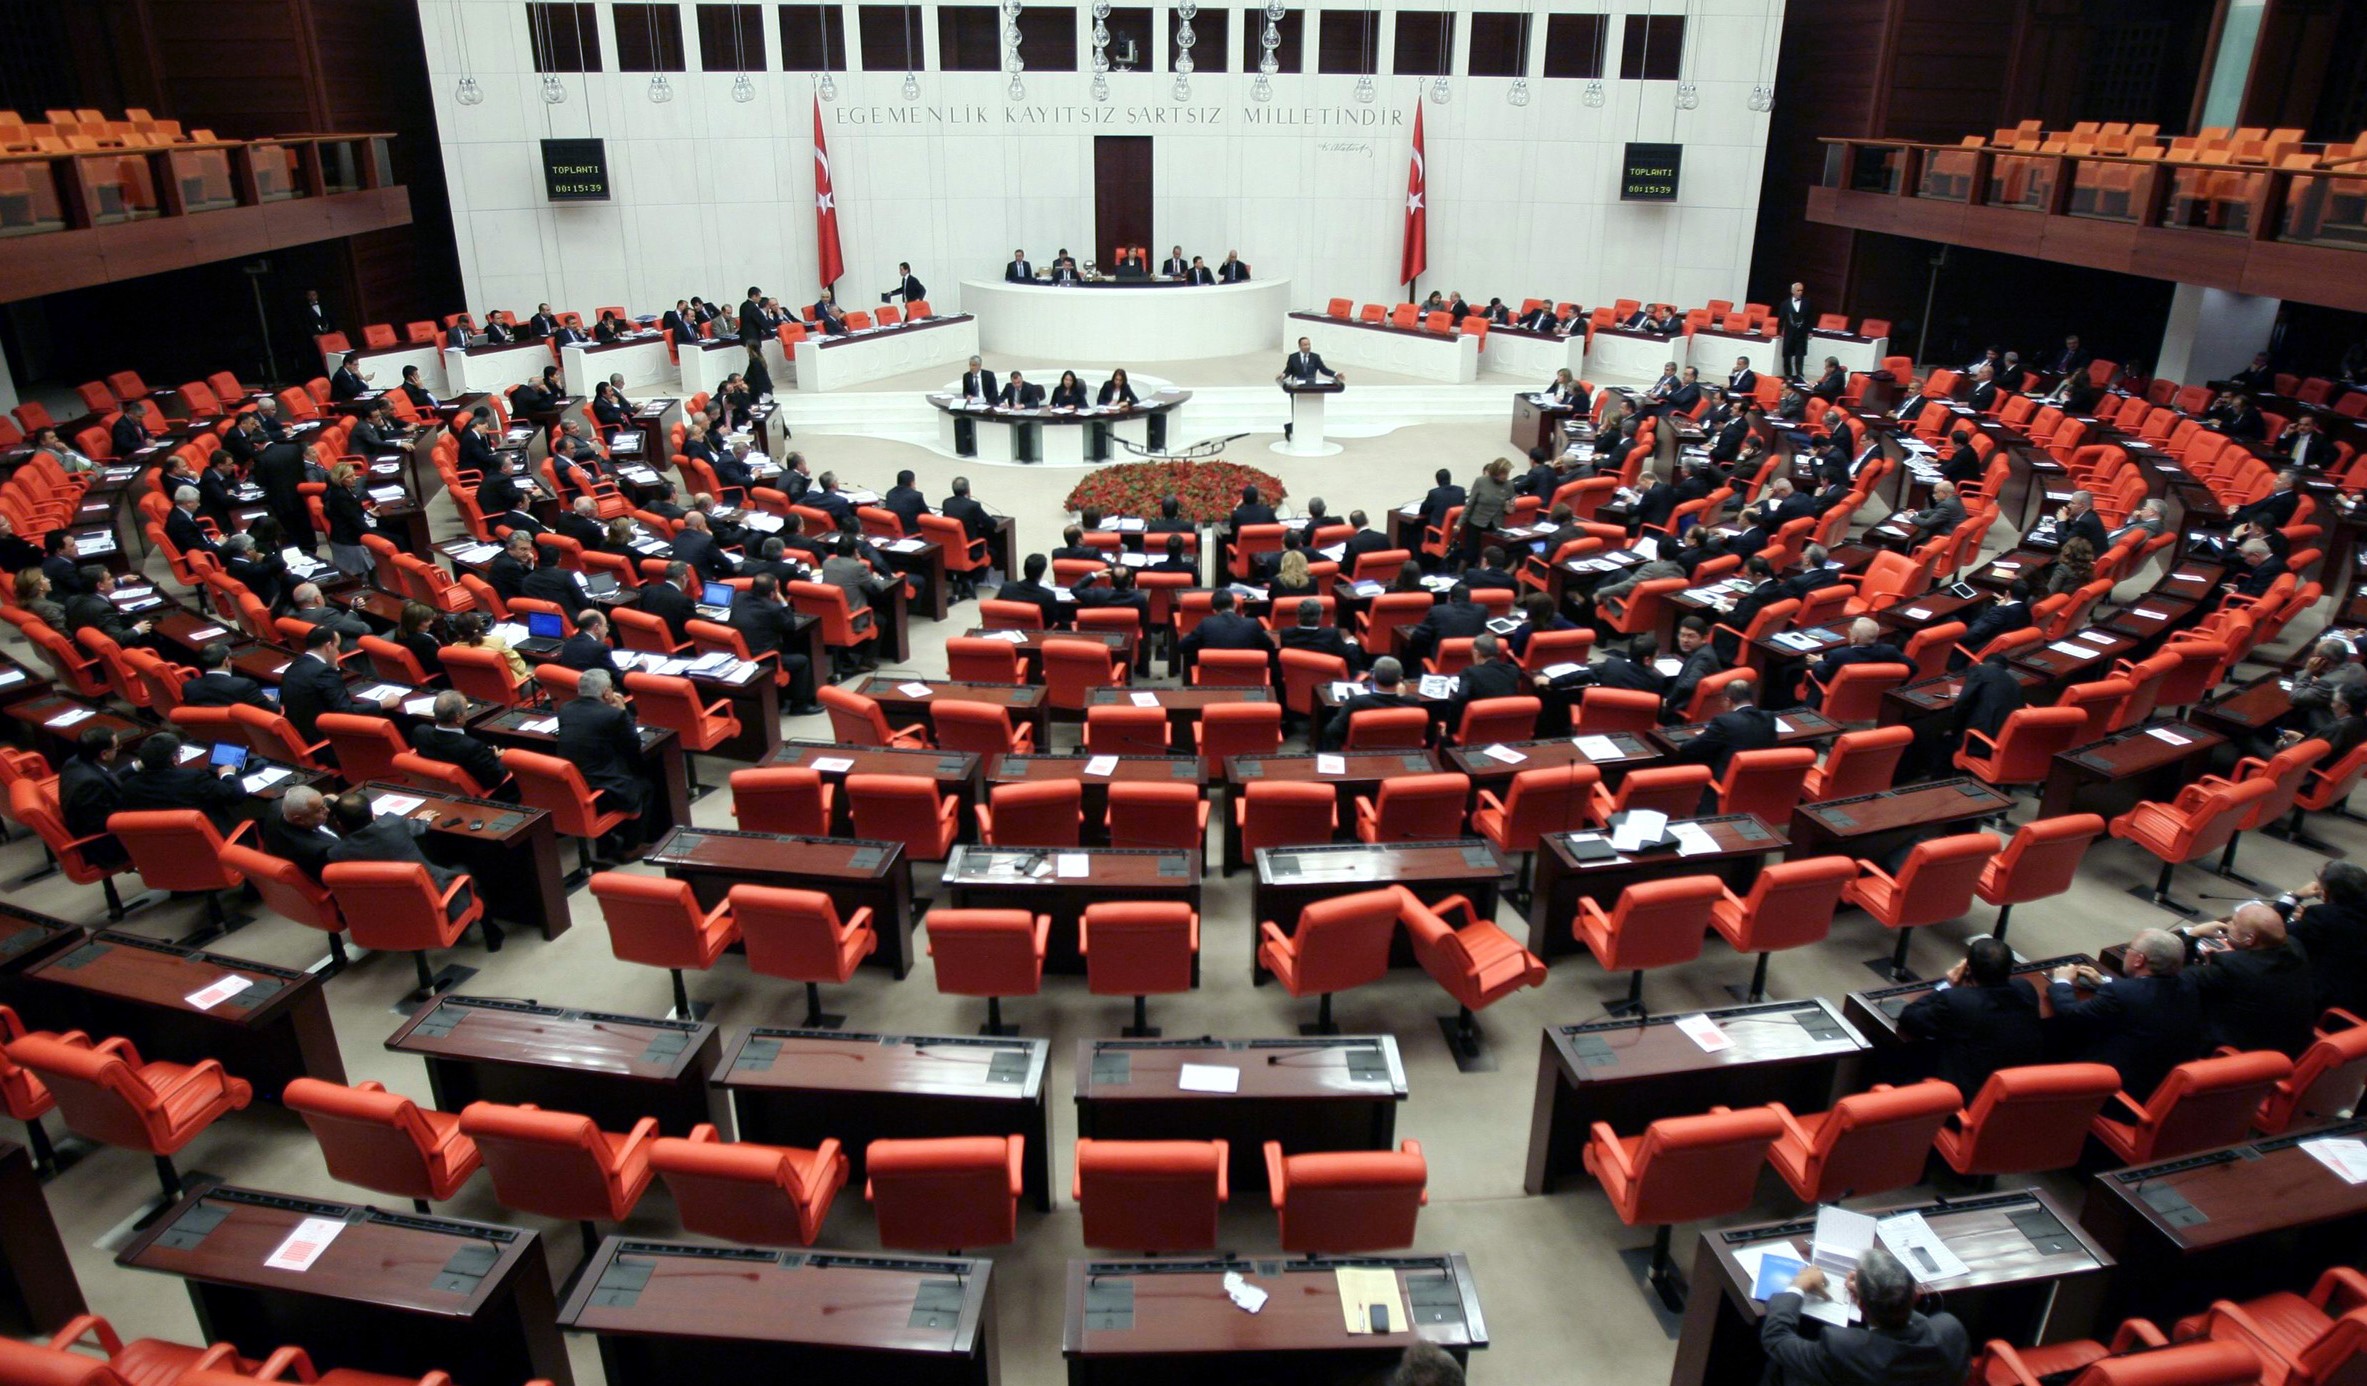 Στις 2 Ιανουαρίου ψηφίζεται στην τουρκική Βουλή η αποστολή δυνάμεων στην Λιβύη